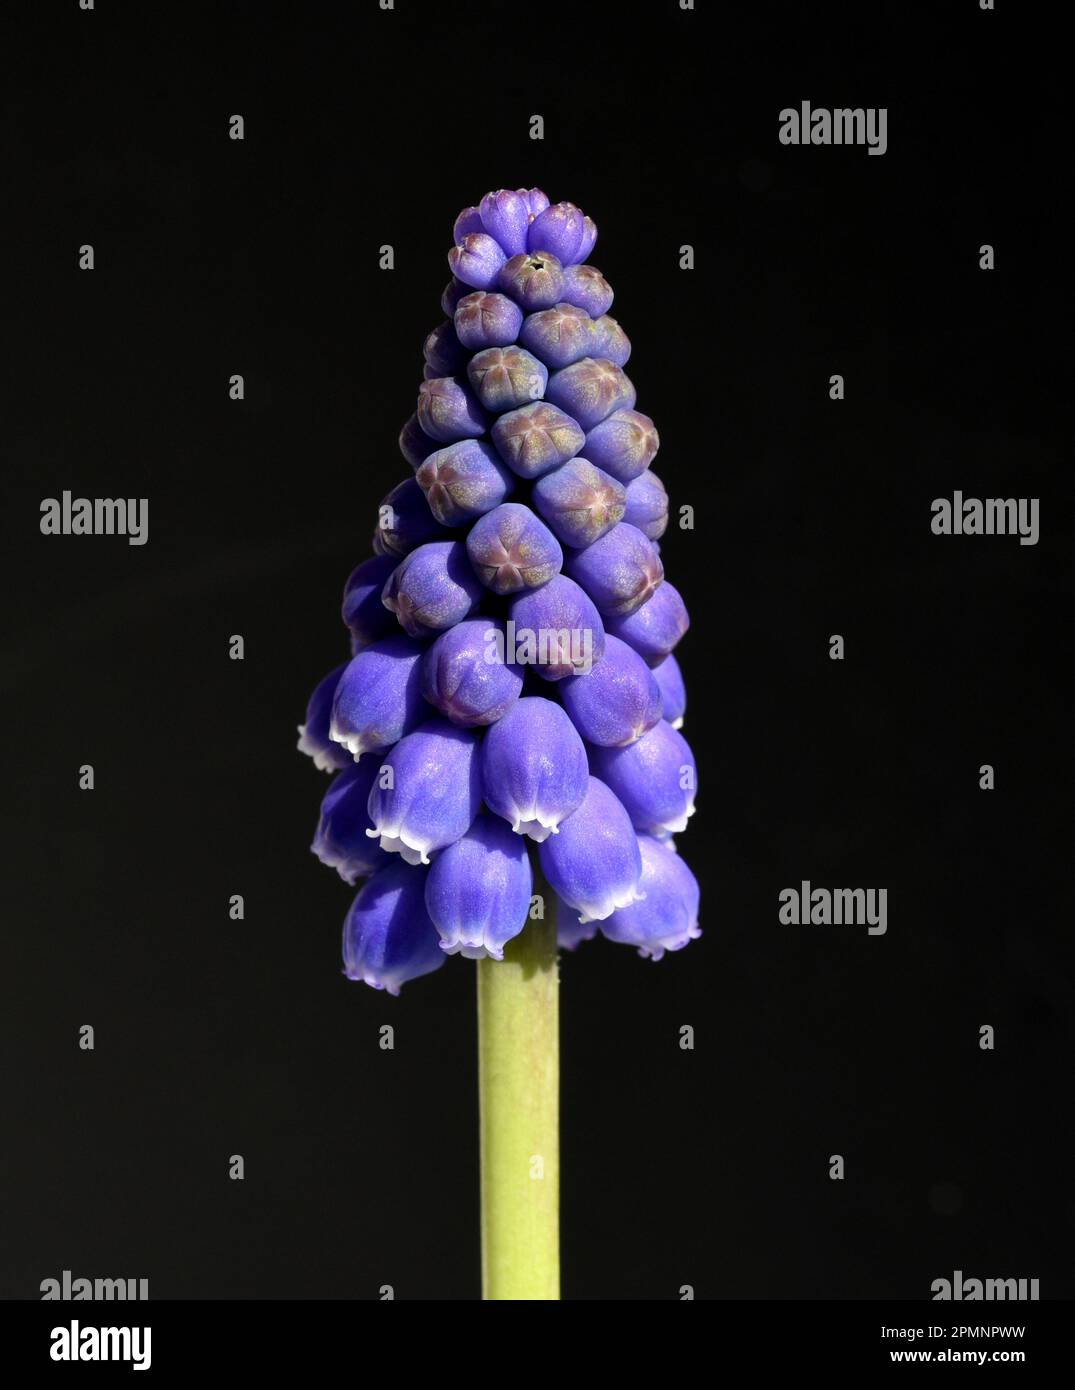 Traubenhyazinthe, Muscari latifolium, ist eine wachsende sauvage Blume mit blauen Bluten. La jacinthe de raisin, Muscari latifolium, est une fleur sauvage au bleu Banque D'Images